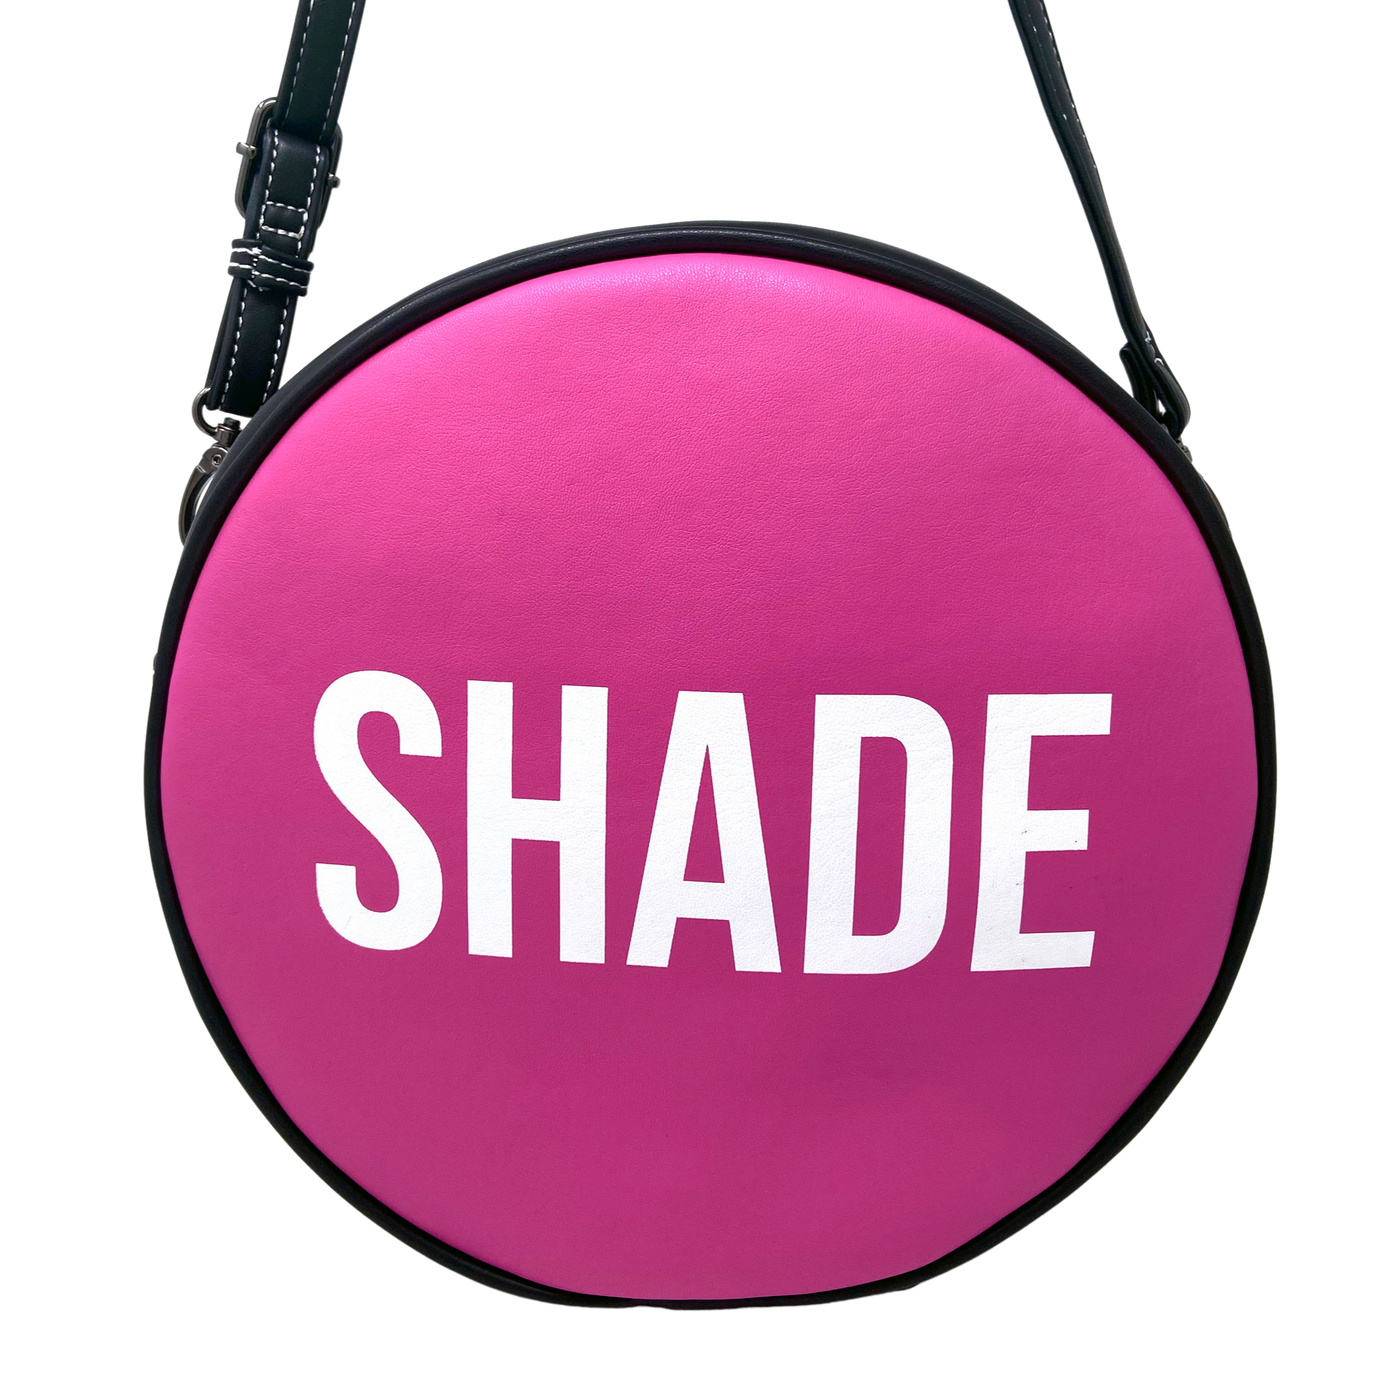 Shade Button Crossbody Bag